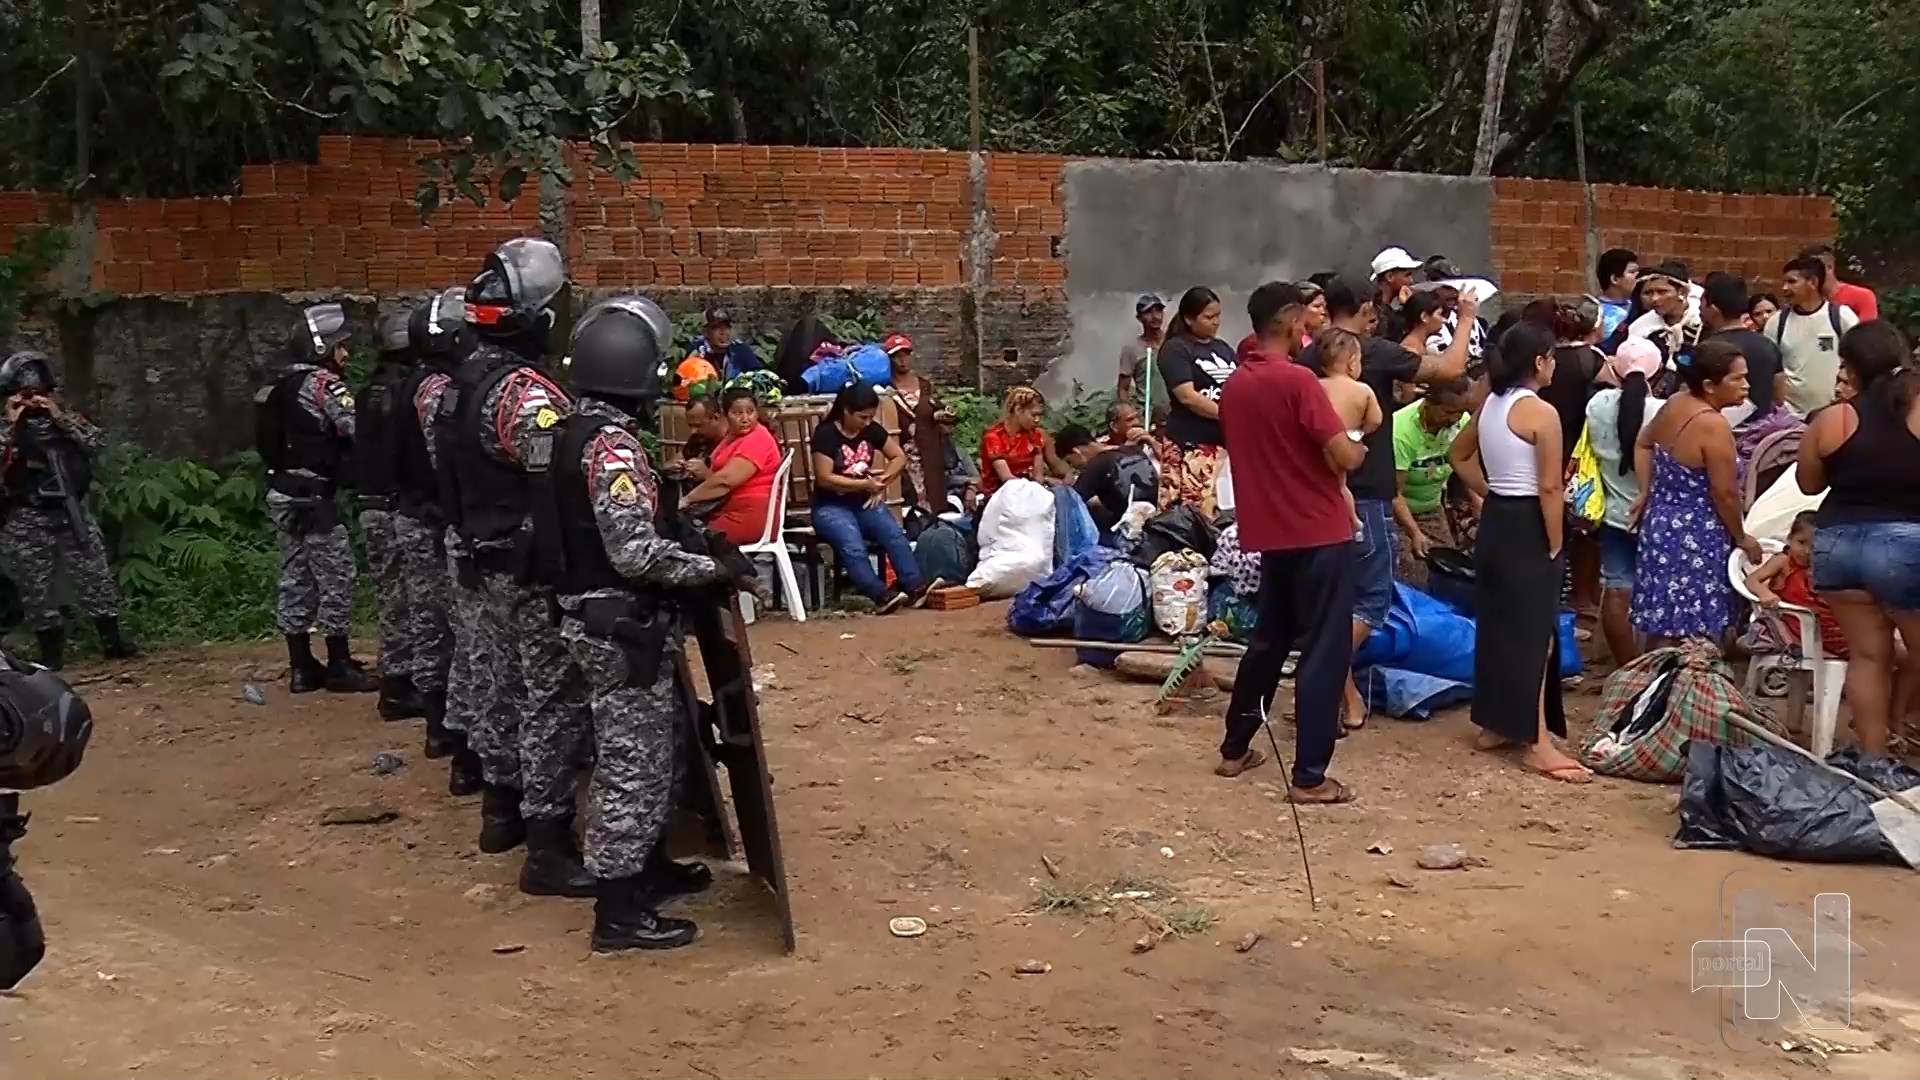 Policia retira famílias indígenas de invasão na Zona Oeste de Manaus